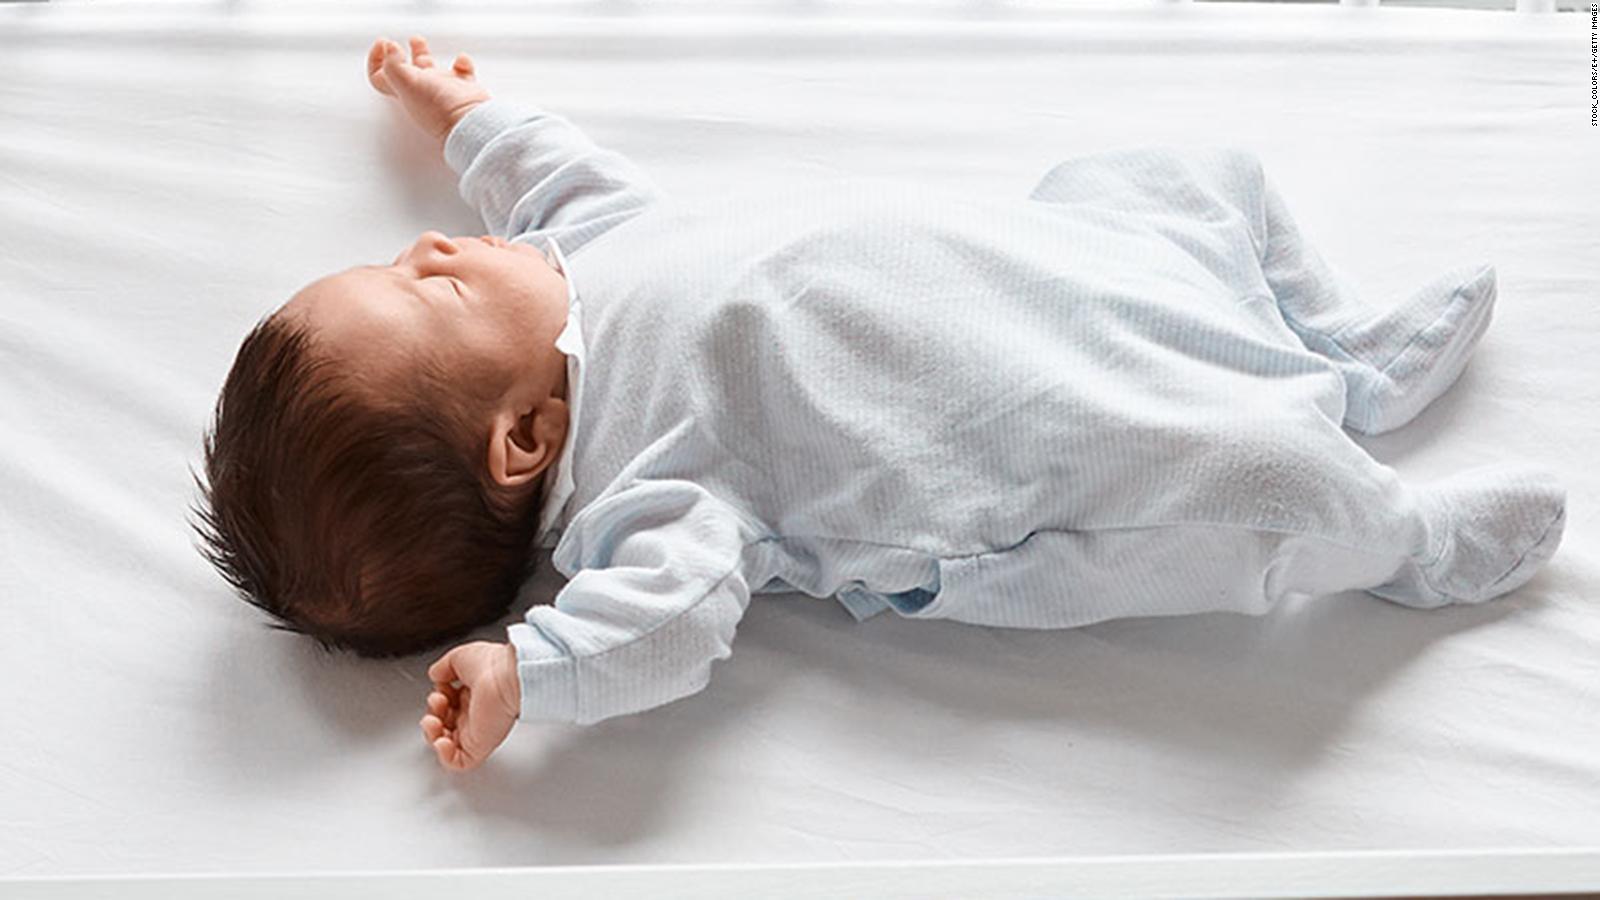 Este colchón vibra si ve riesgo de muerte súbita del bebé